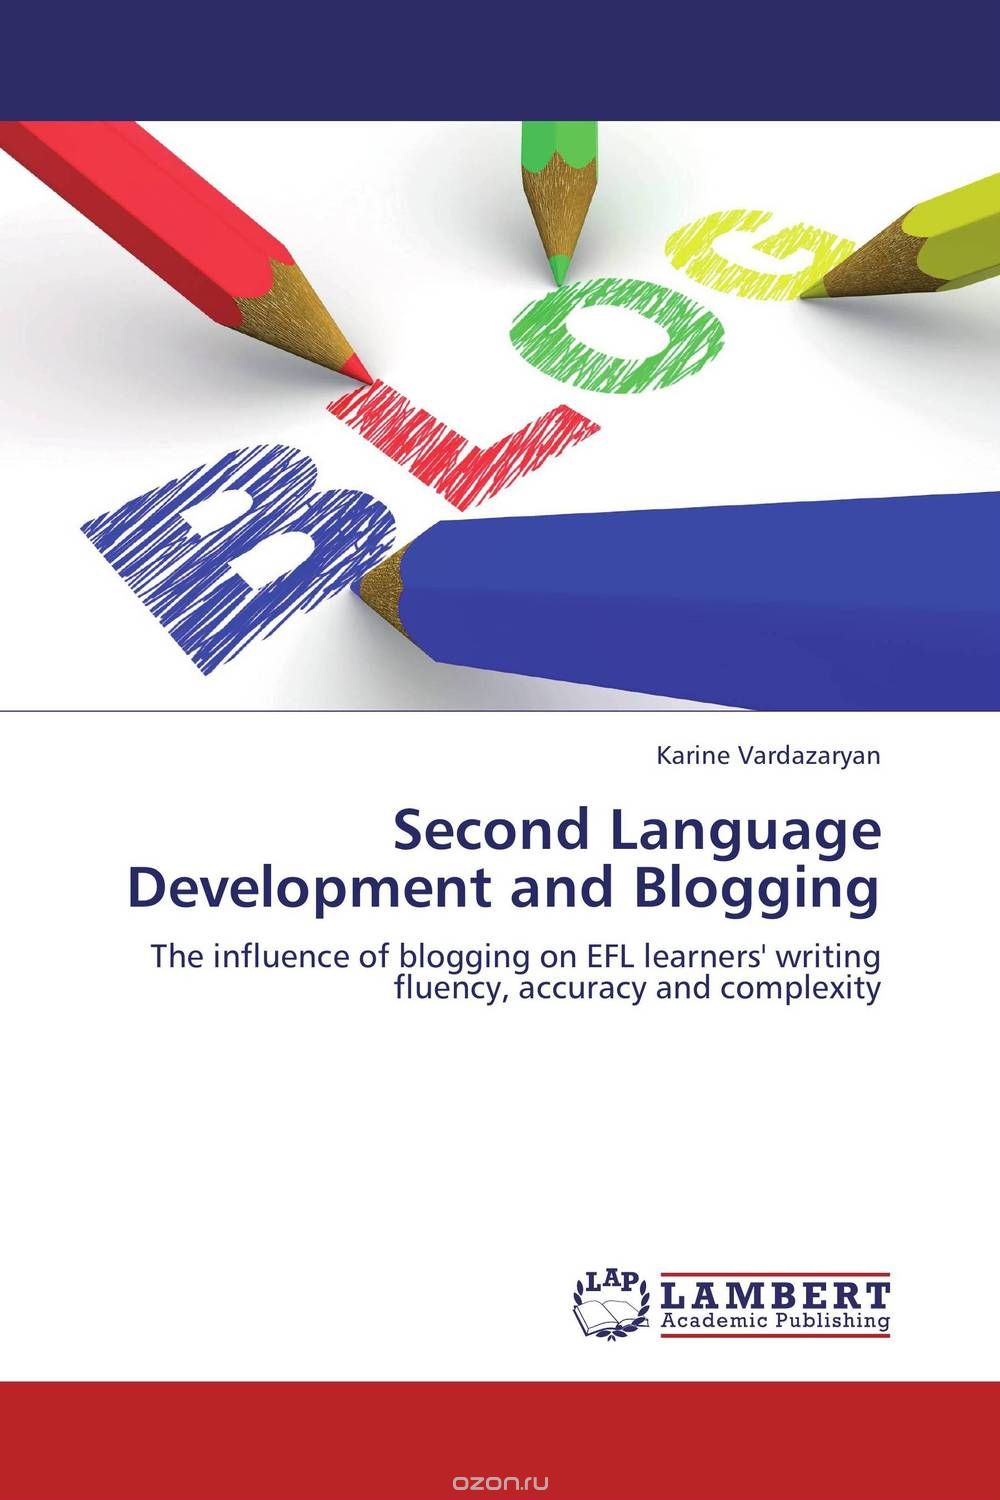 Скачать книгу "Second Language Development and Blogging"